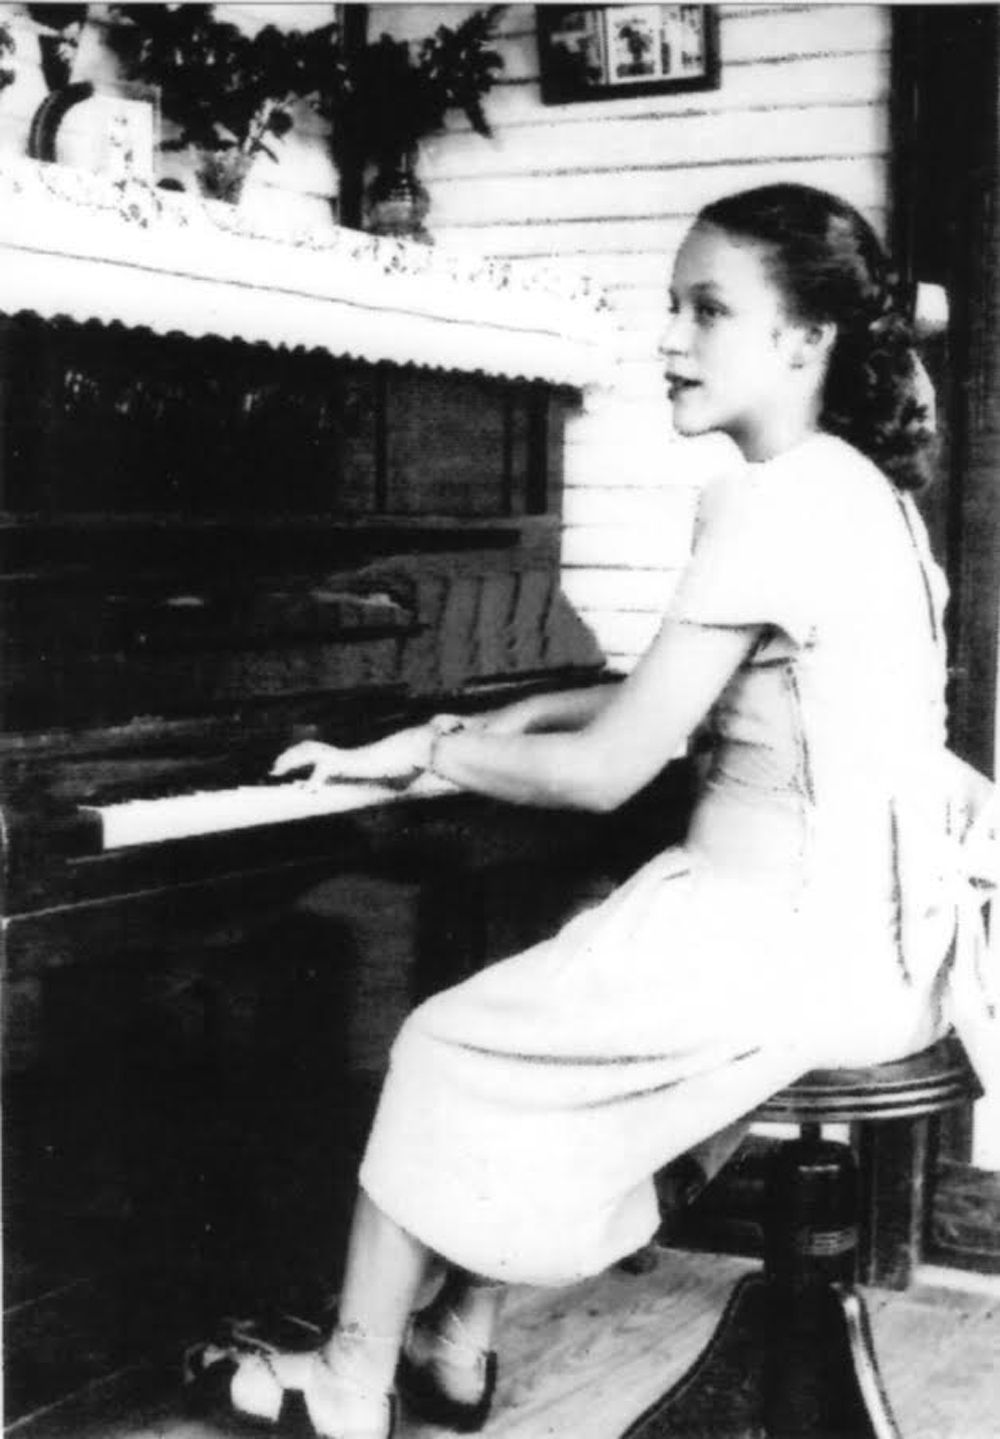 A young Rita Simó at the piano.